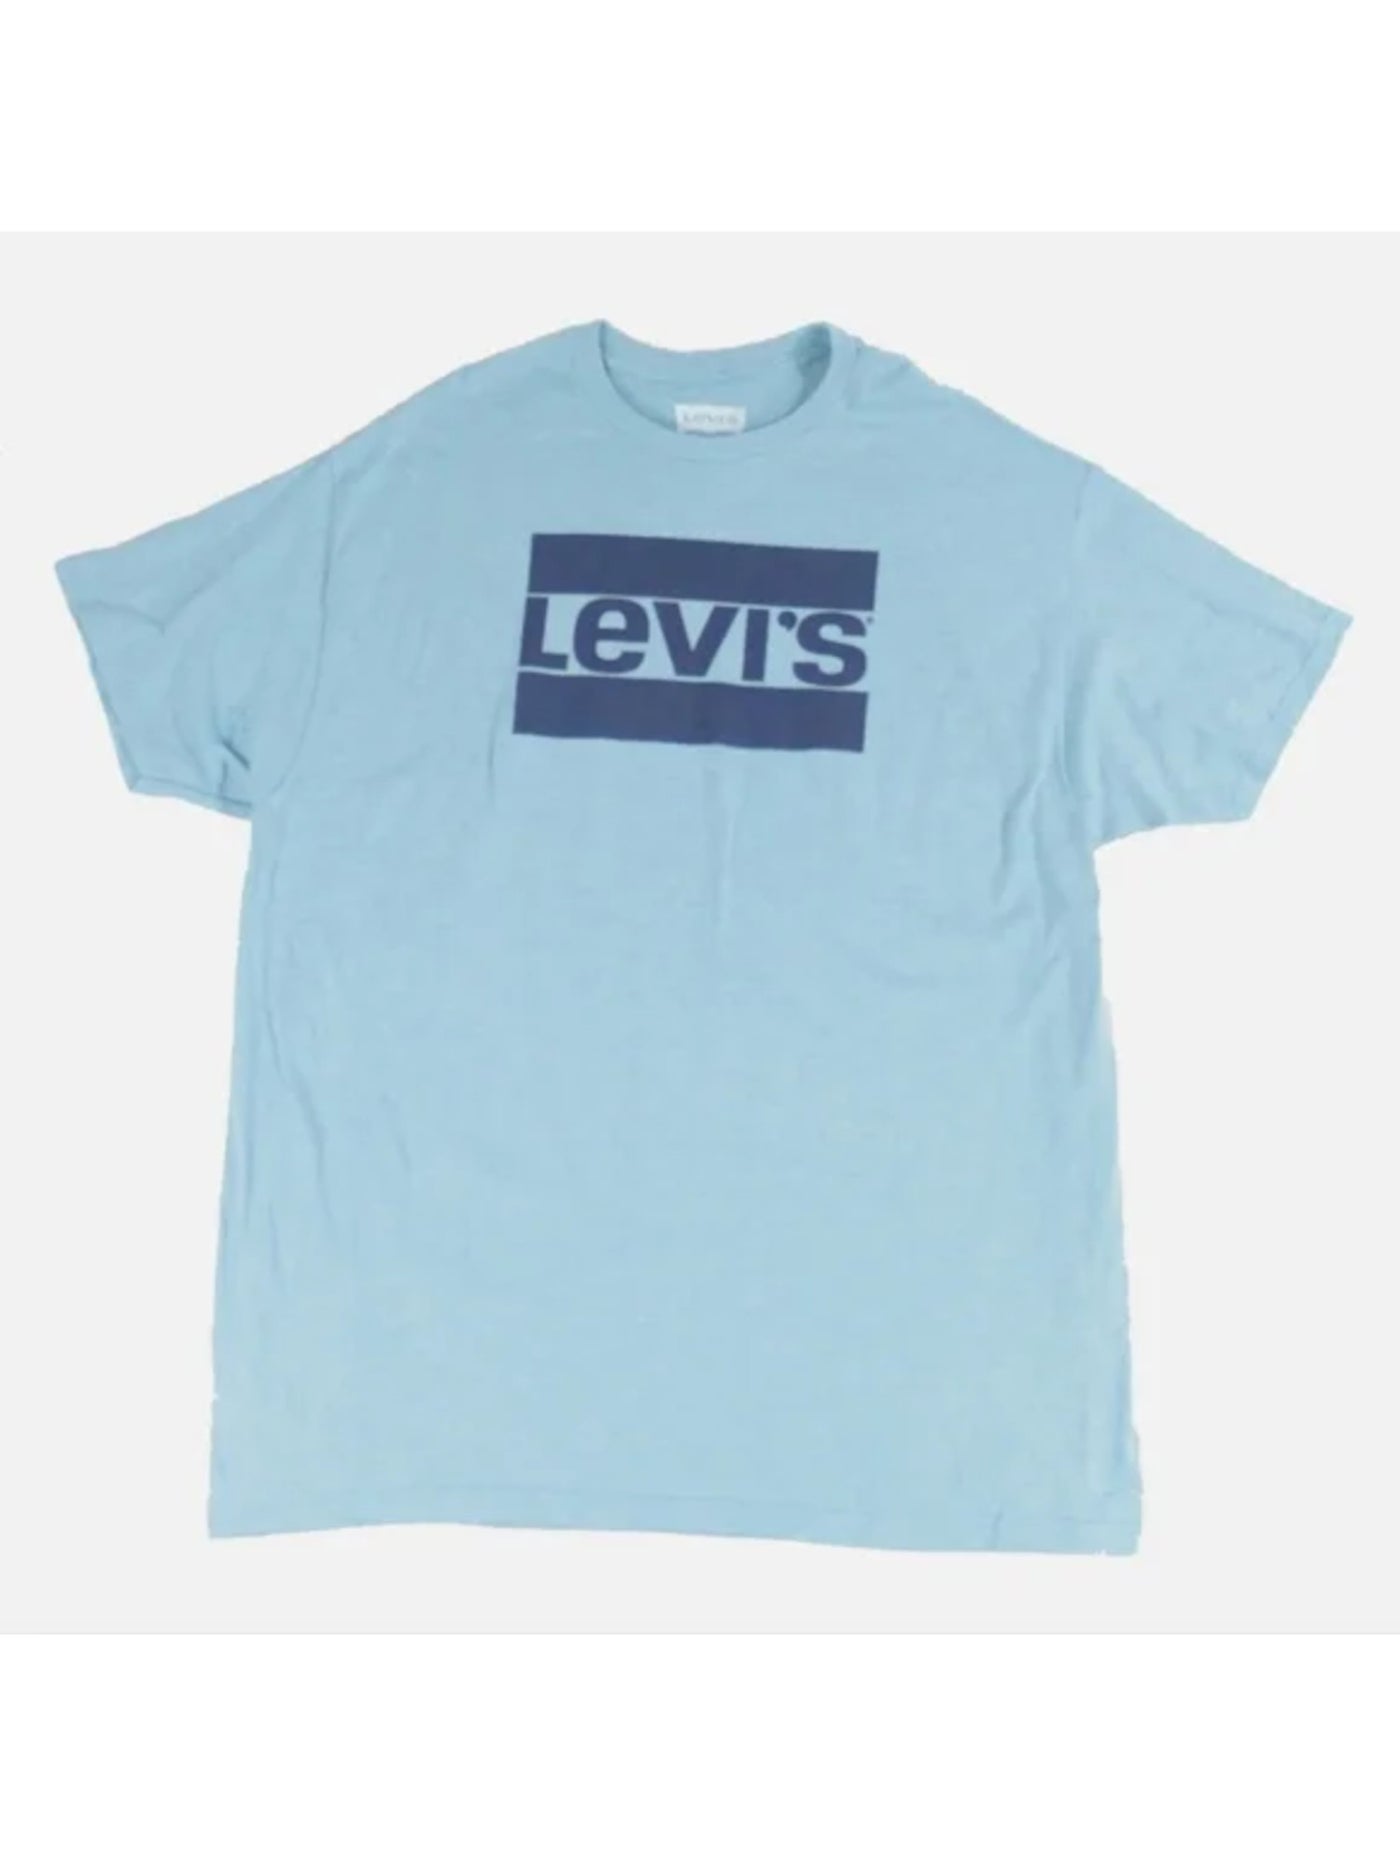 LEVIS Mens Blue Logo Graphic Classic Fit Cotton Blend T-Shirt XXL